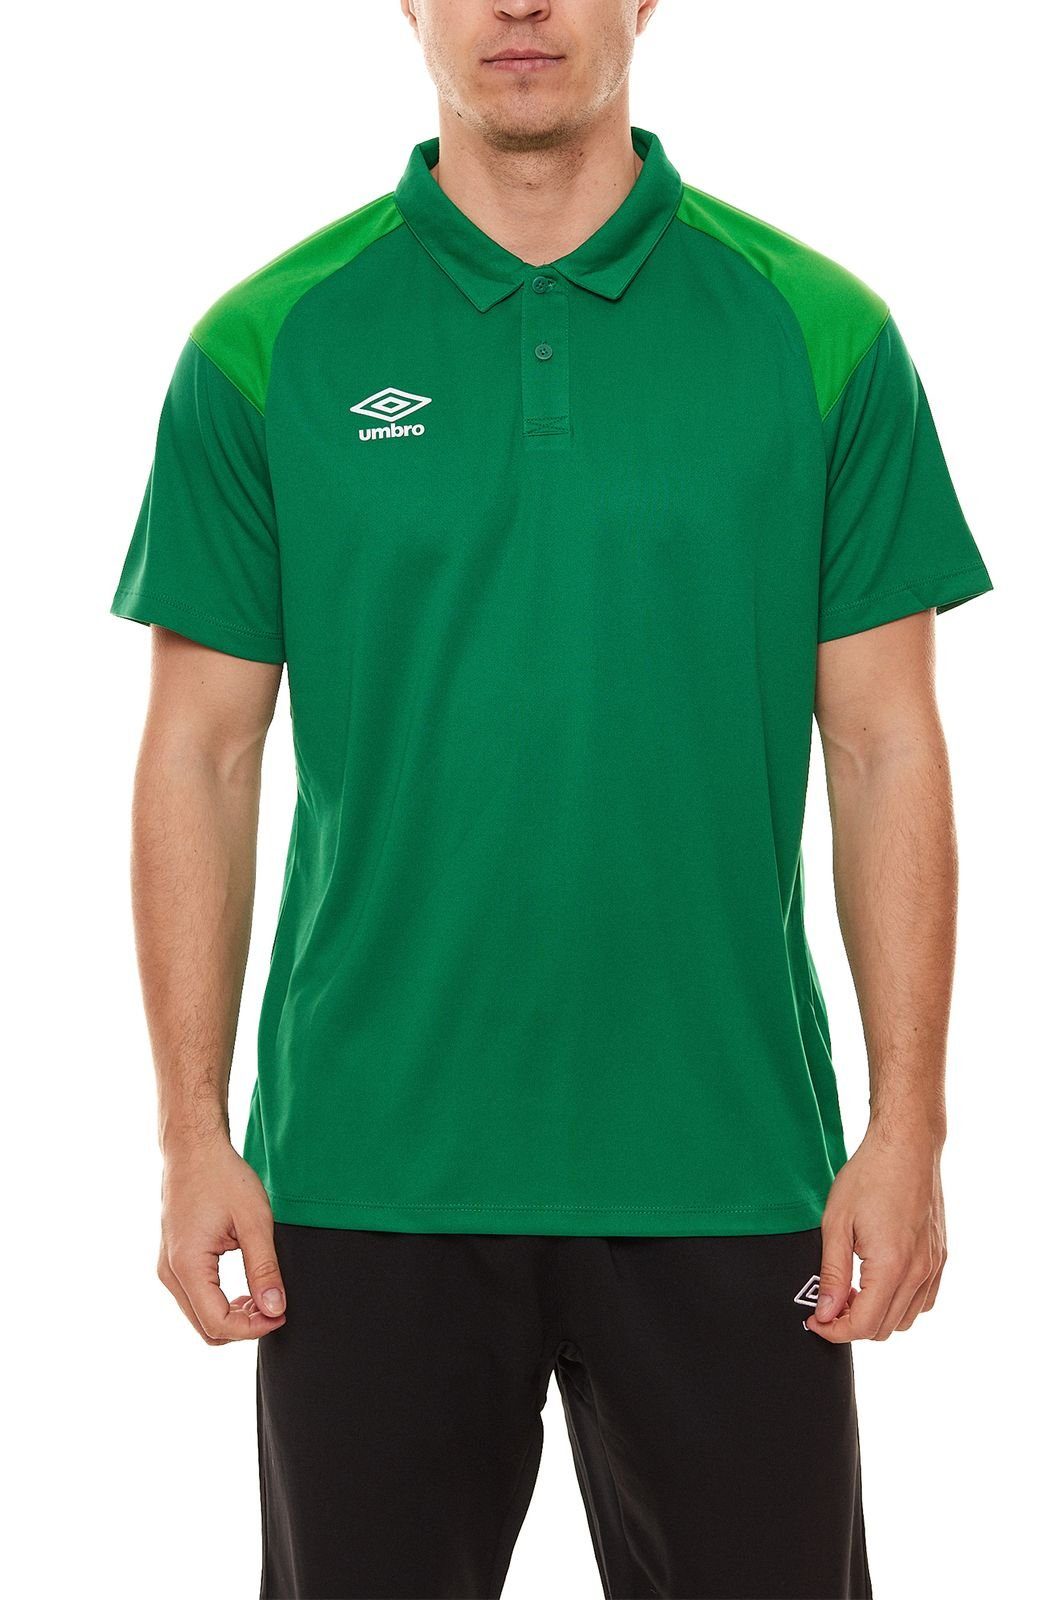 Schulterpartie Golf-Shirt Sport-Shirt umbro mit Umbro kontrastierender Poly Herren Polohemd 65293U-GRA Grün Polo Rundhalsshirt